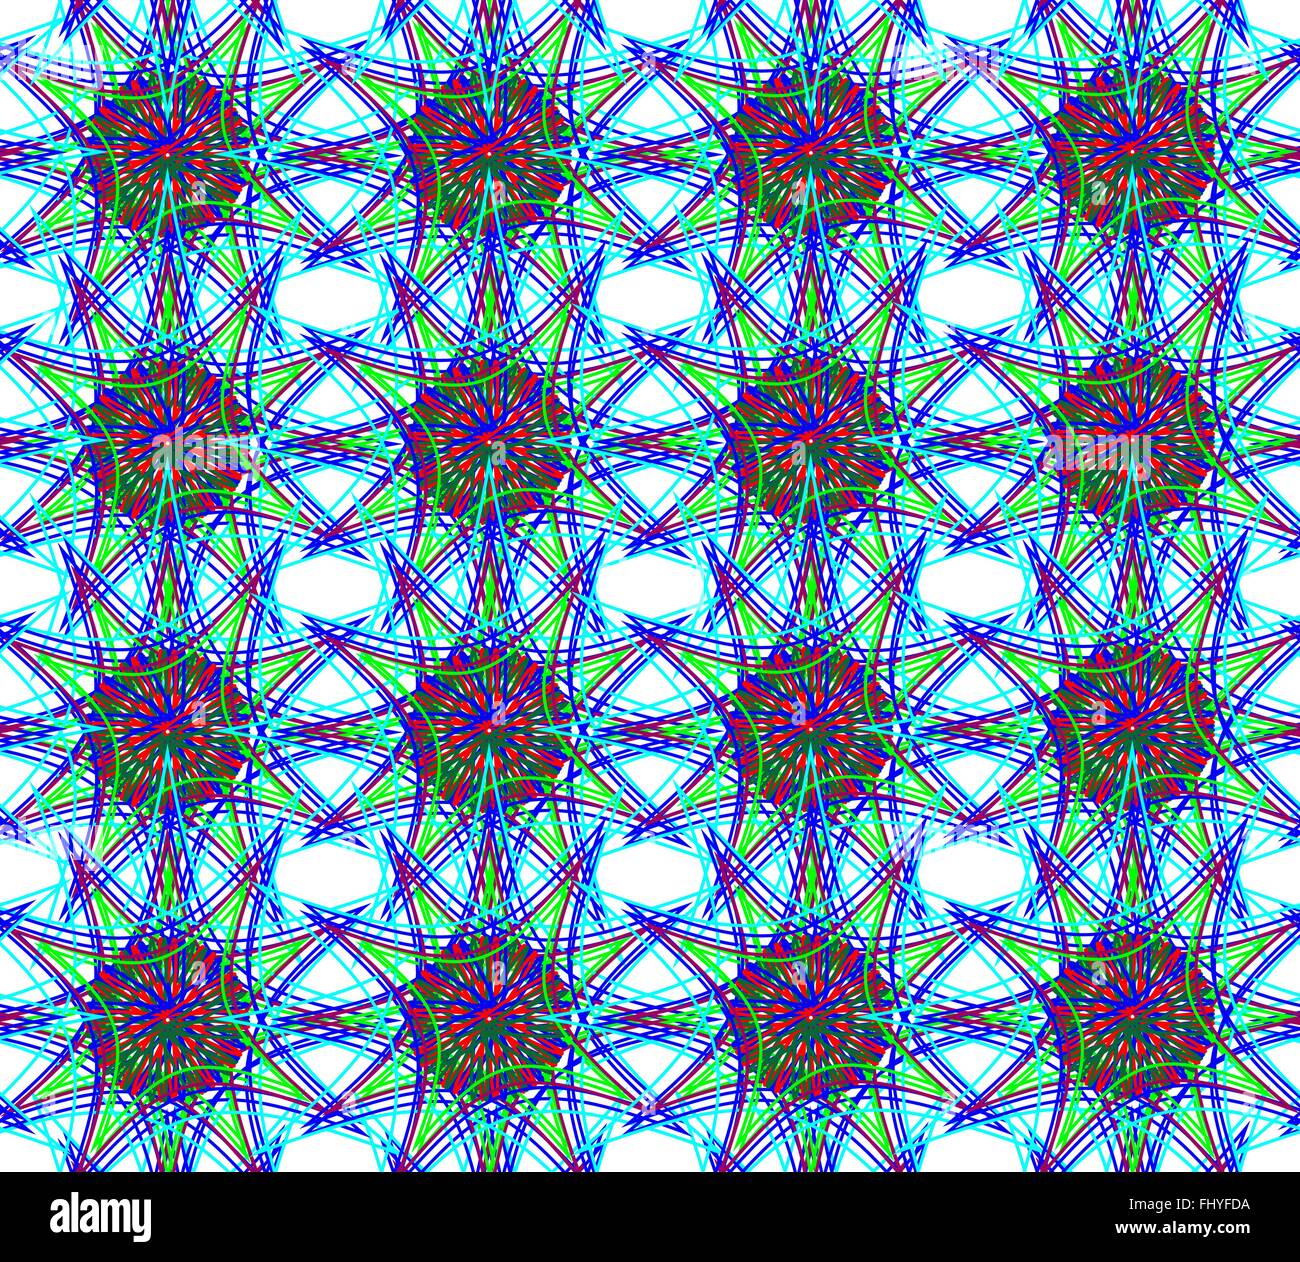 Abstrakte nahtlose floralen Muster in verschiedenen Neonfarben mit dominanten blauen Farbe. Digitale Vektorgrafik Hintergrund. Stock Vektor